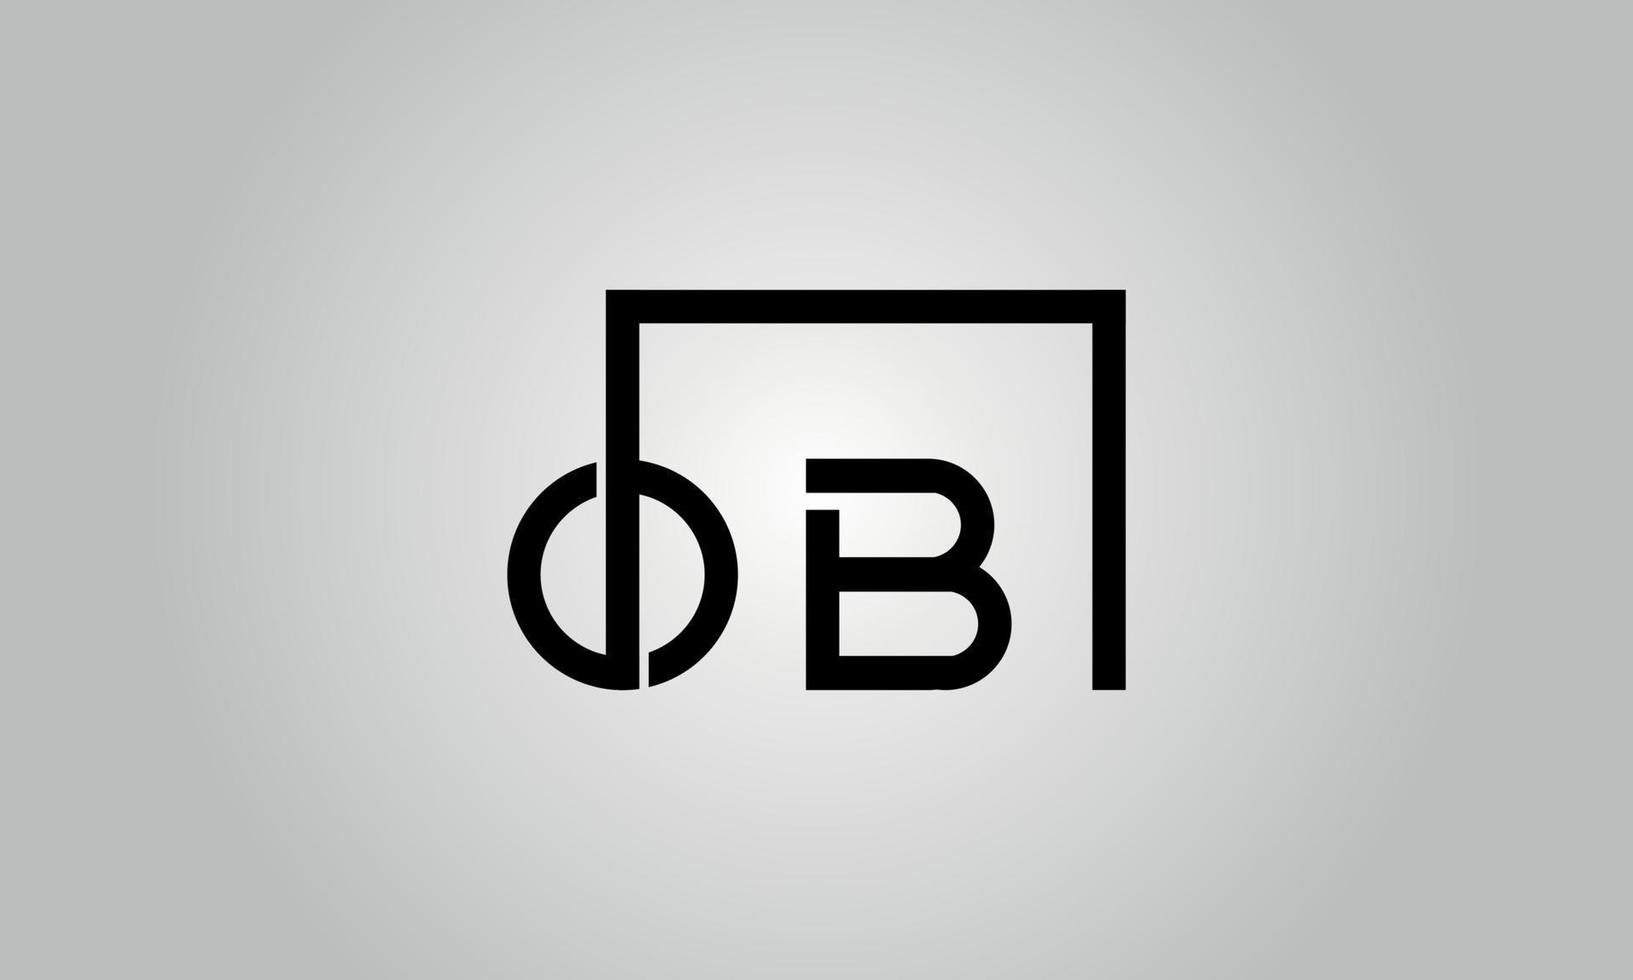 création de logo lettre ob. logo ob avec forme carrée dans le modèle de vecteur gratuit de vecteur de couleurs noires.